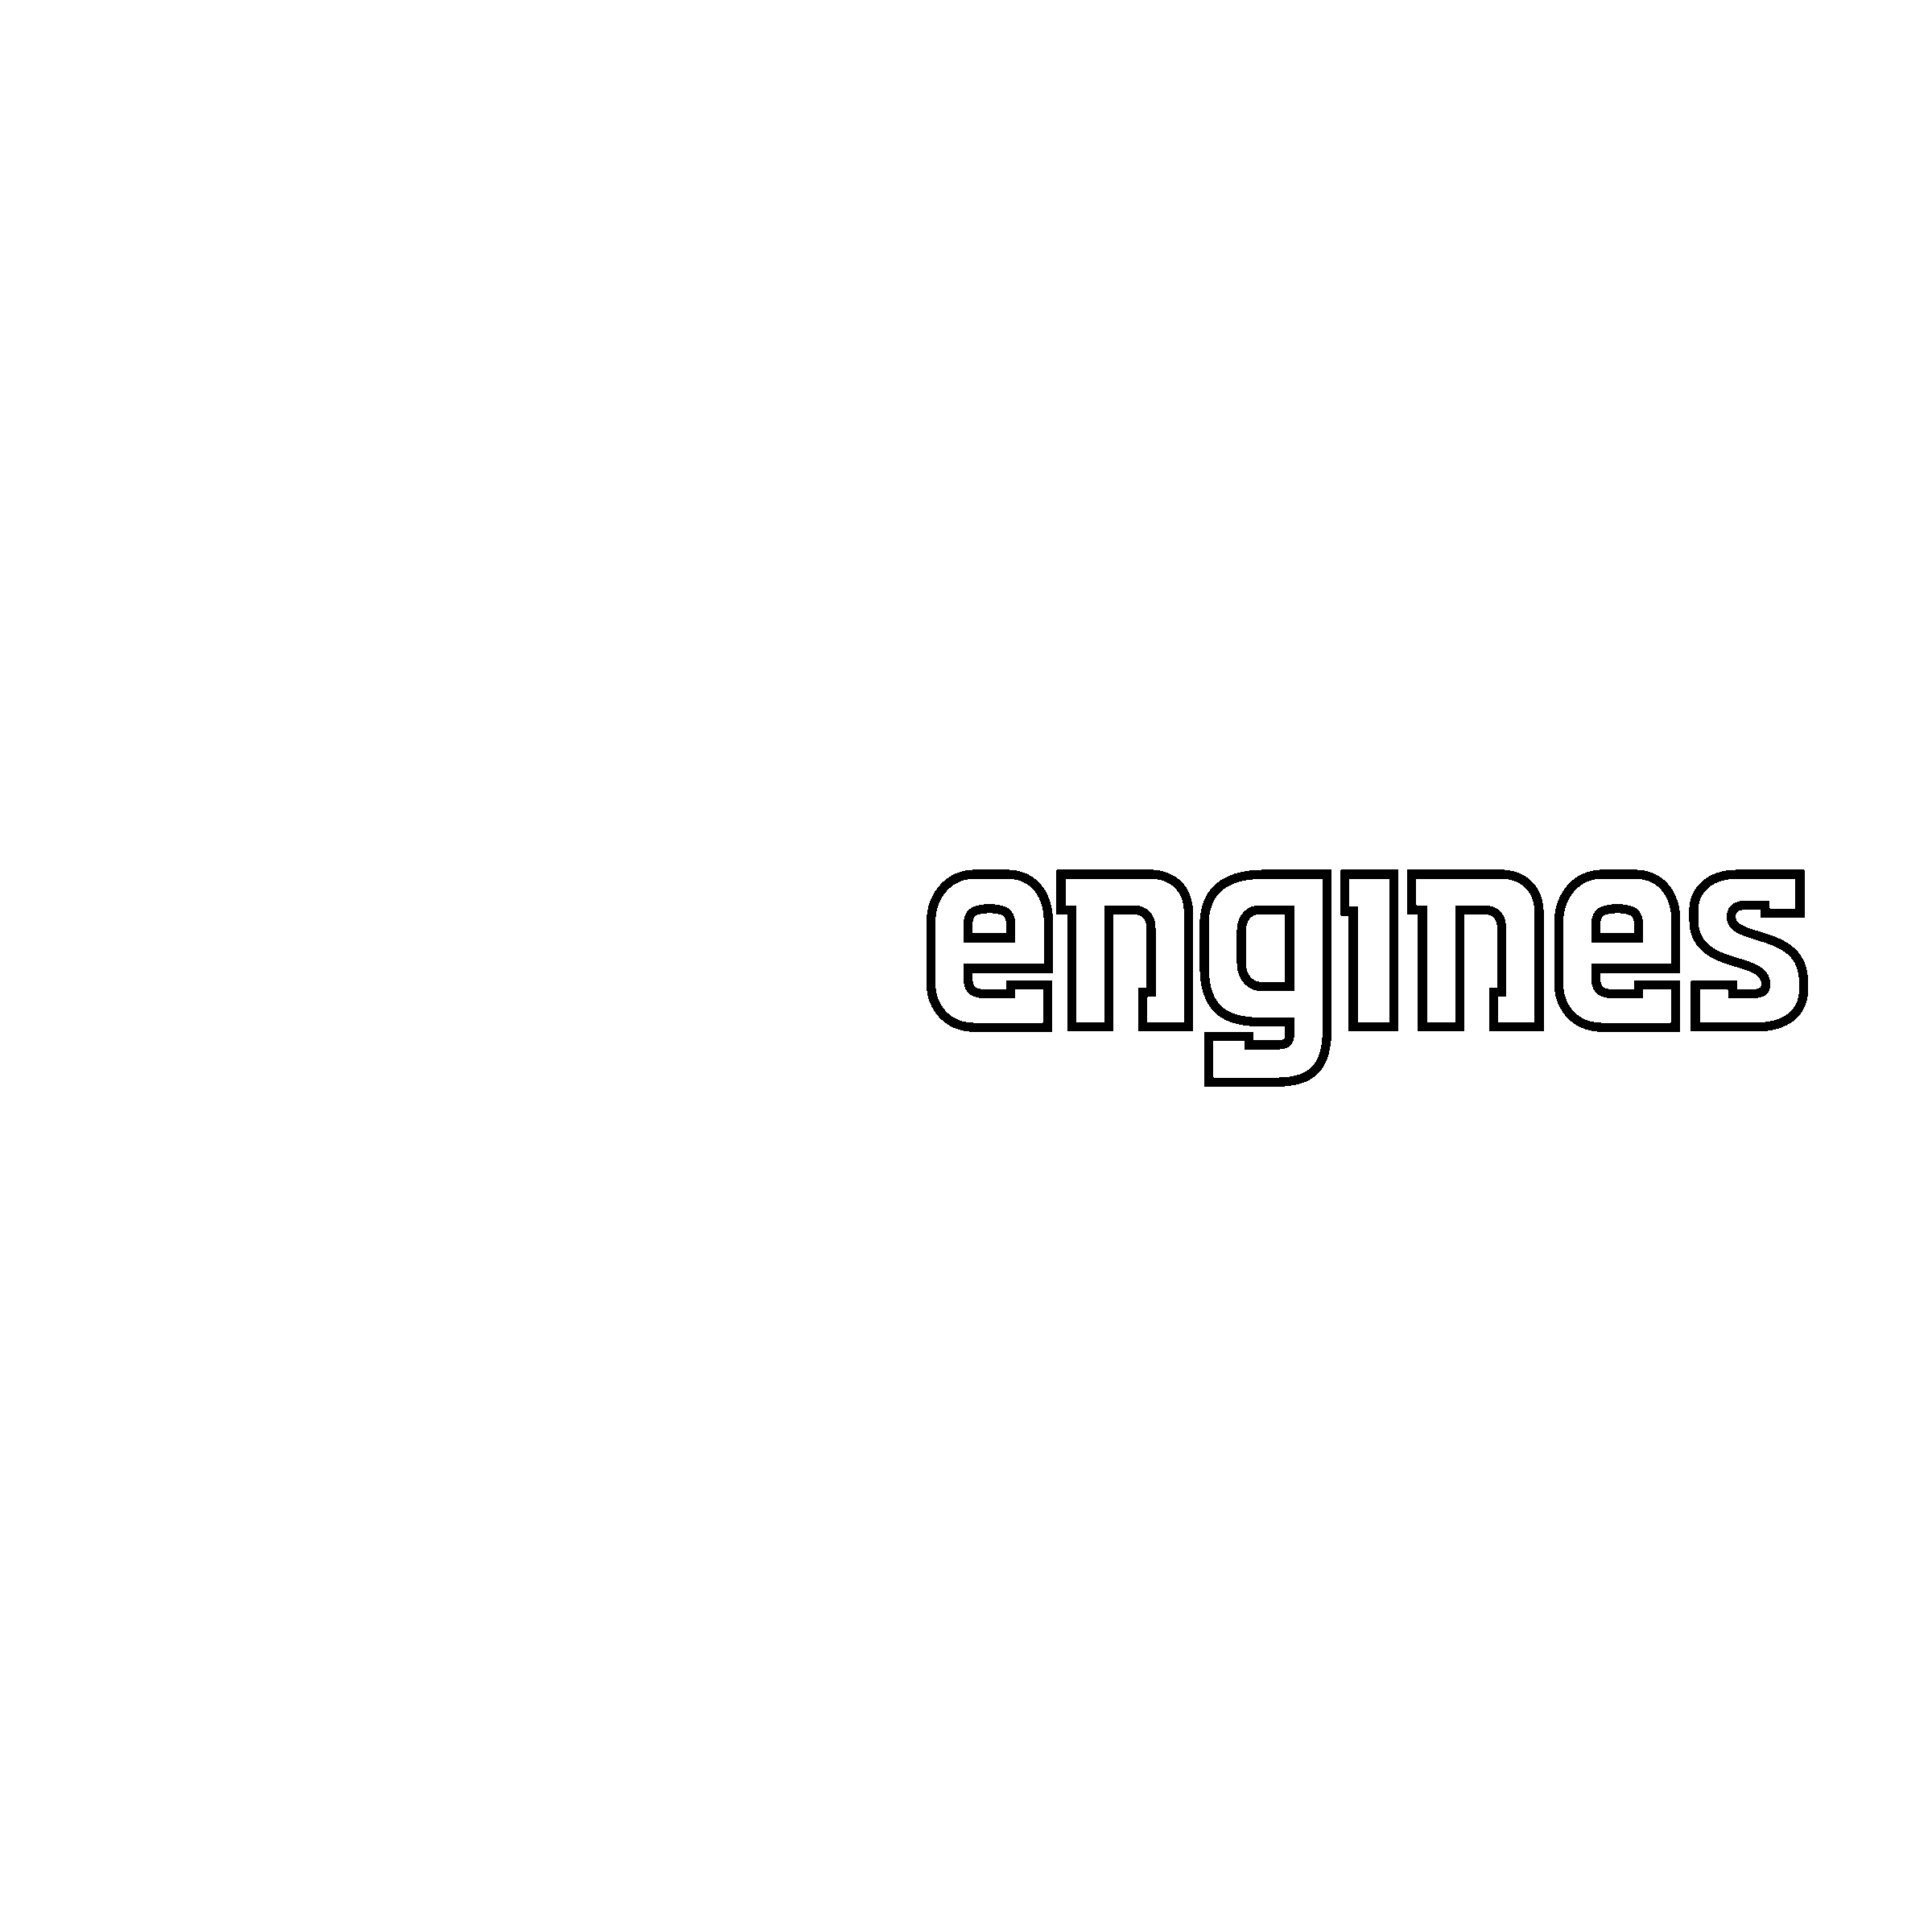 Kohler Engines Logo - Kohler Engines Logo PNG Transparent & SVG Vector